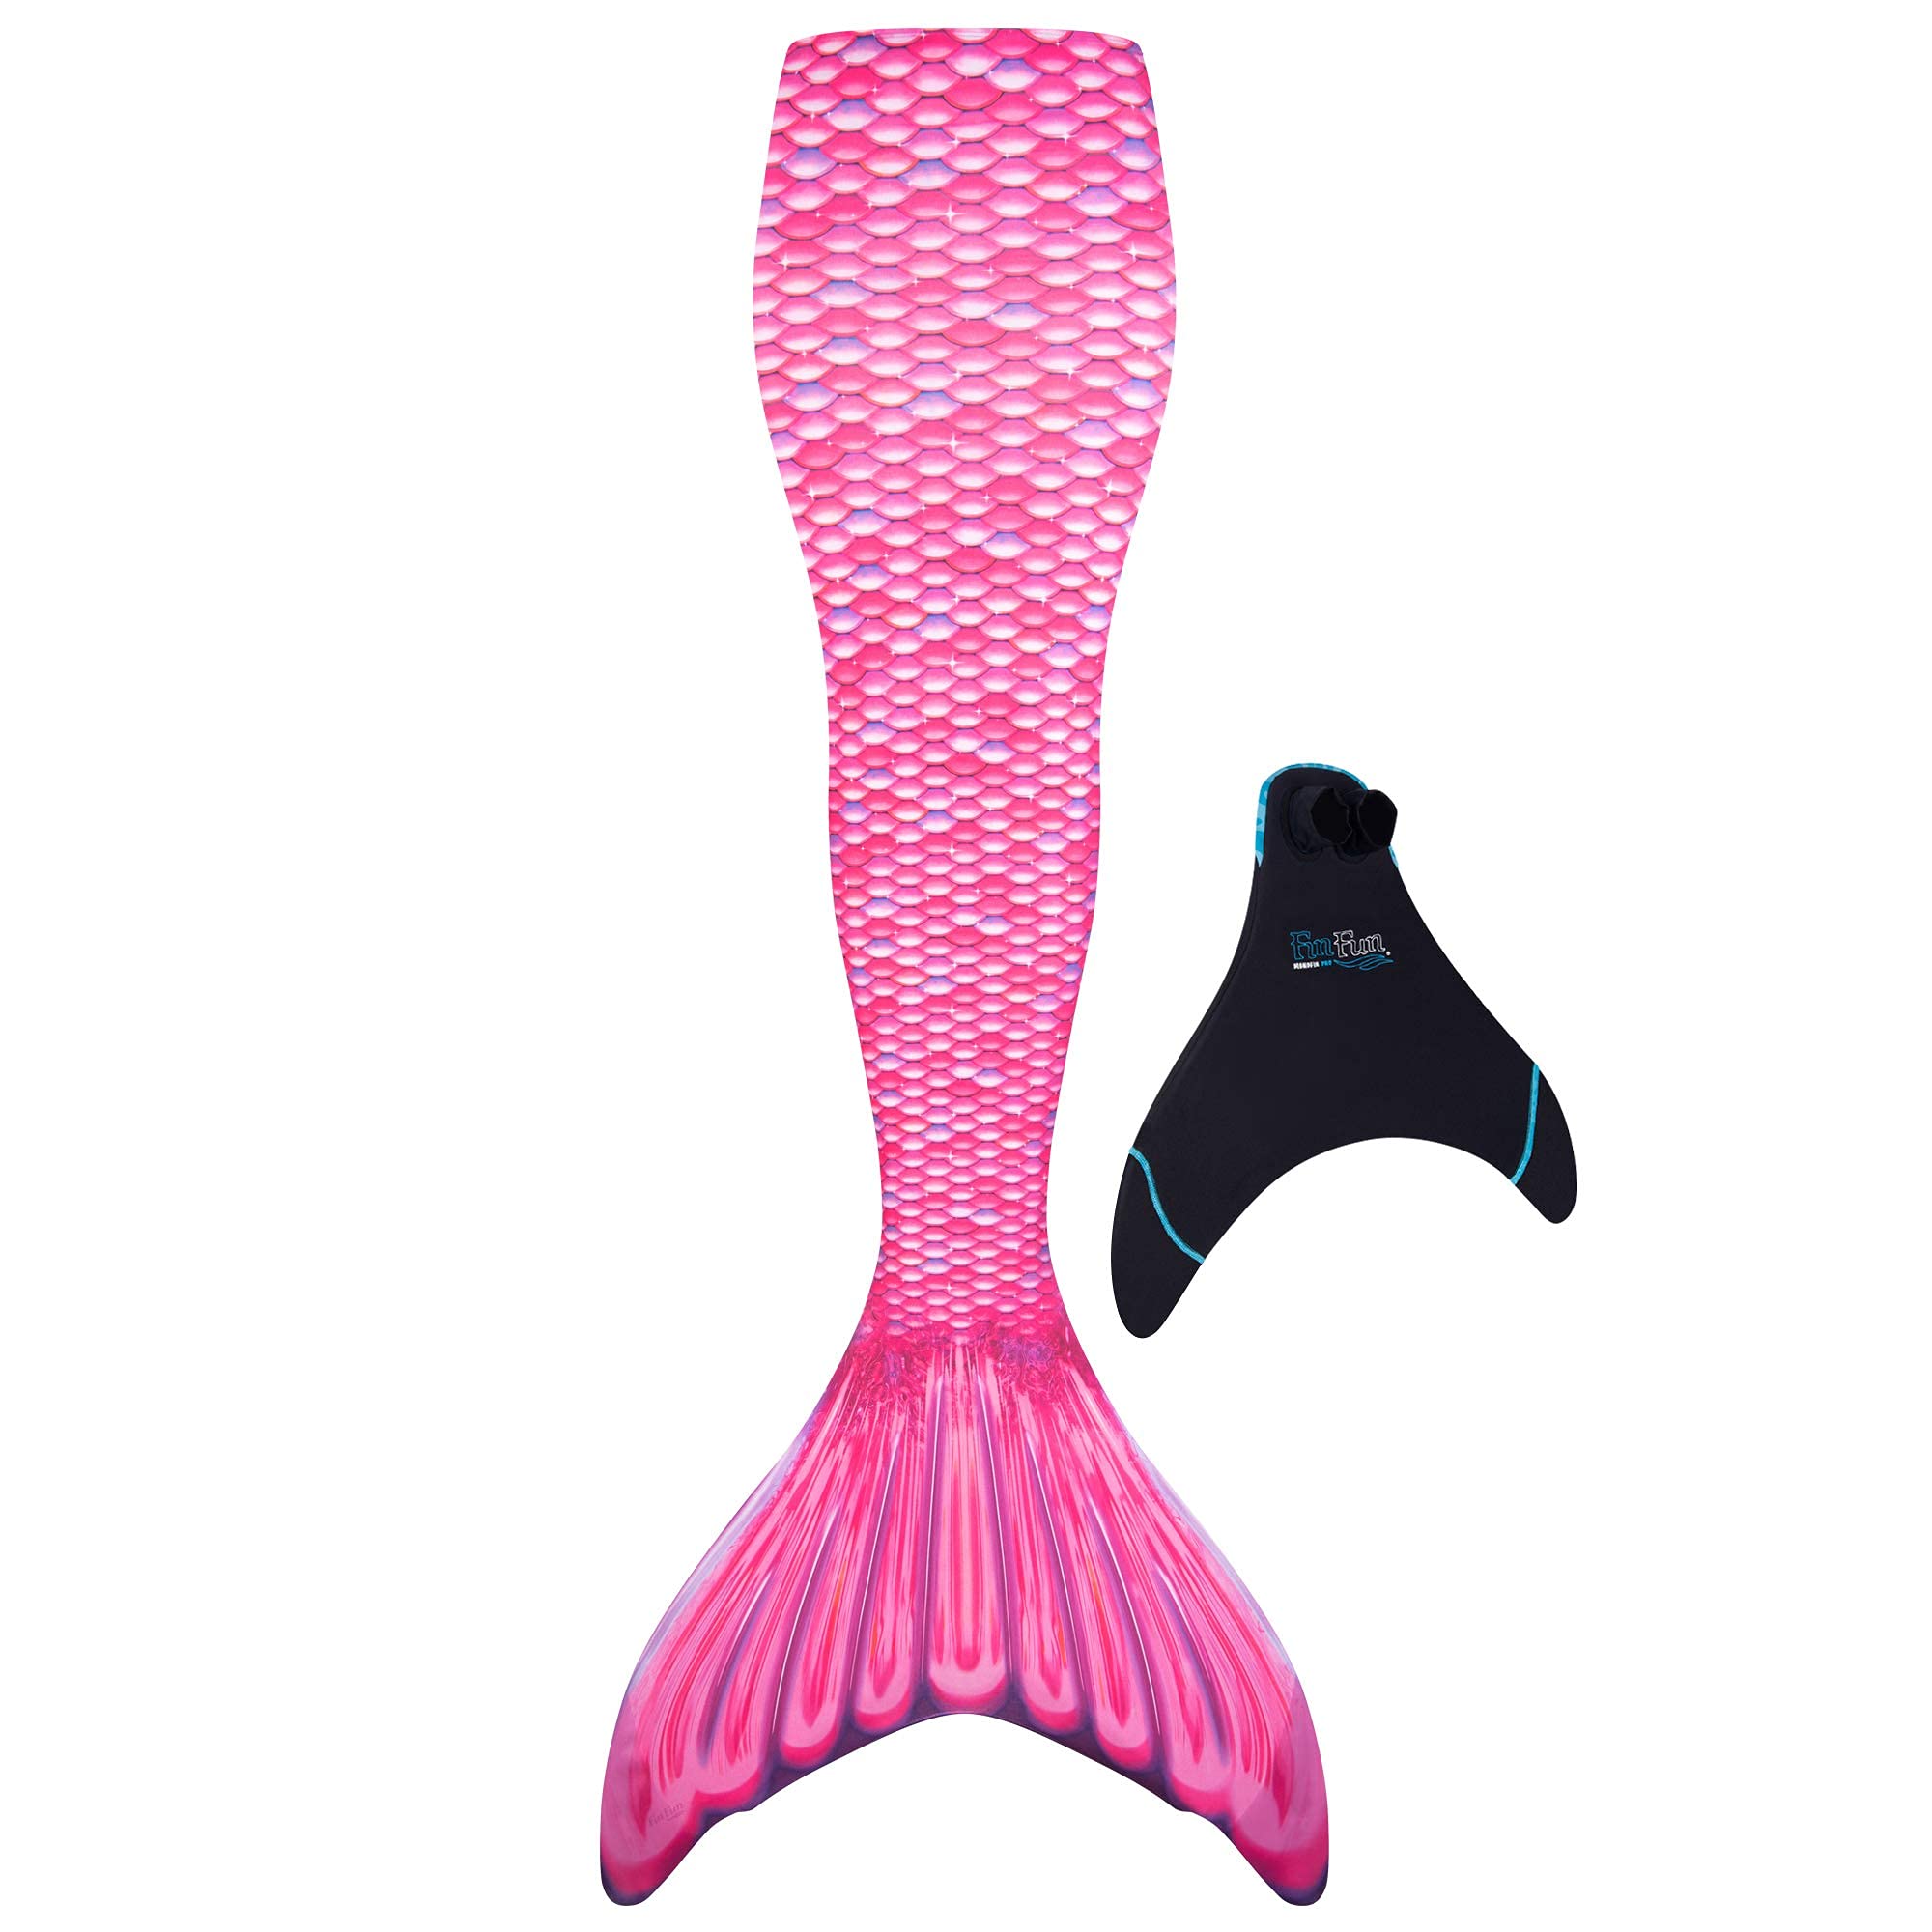 Fin Fun Meerjungfrauenflosse für Mädchen und Damen mit verstärkten Flossenspitzen - Monoflosse inklusive Meerjungfrauenflosse für Einsteiger und Fortgeschrittene in originaler Fin Fun Qualität